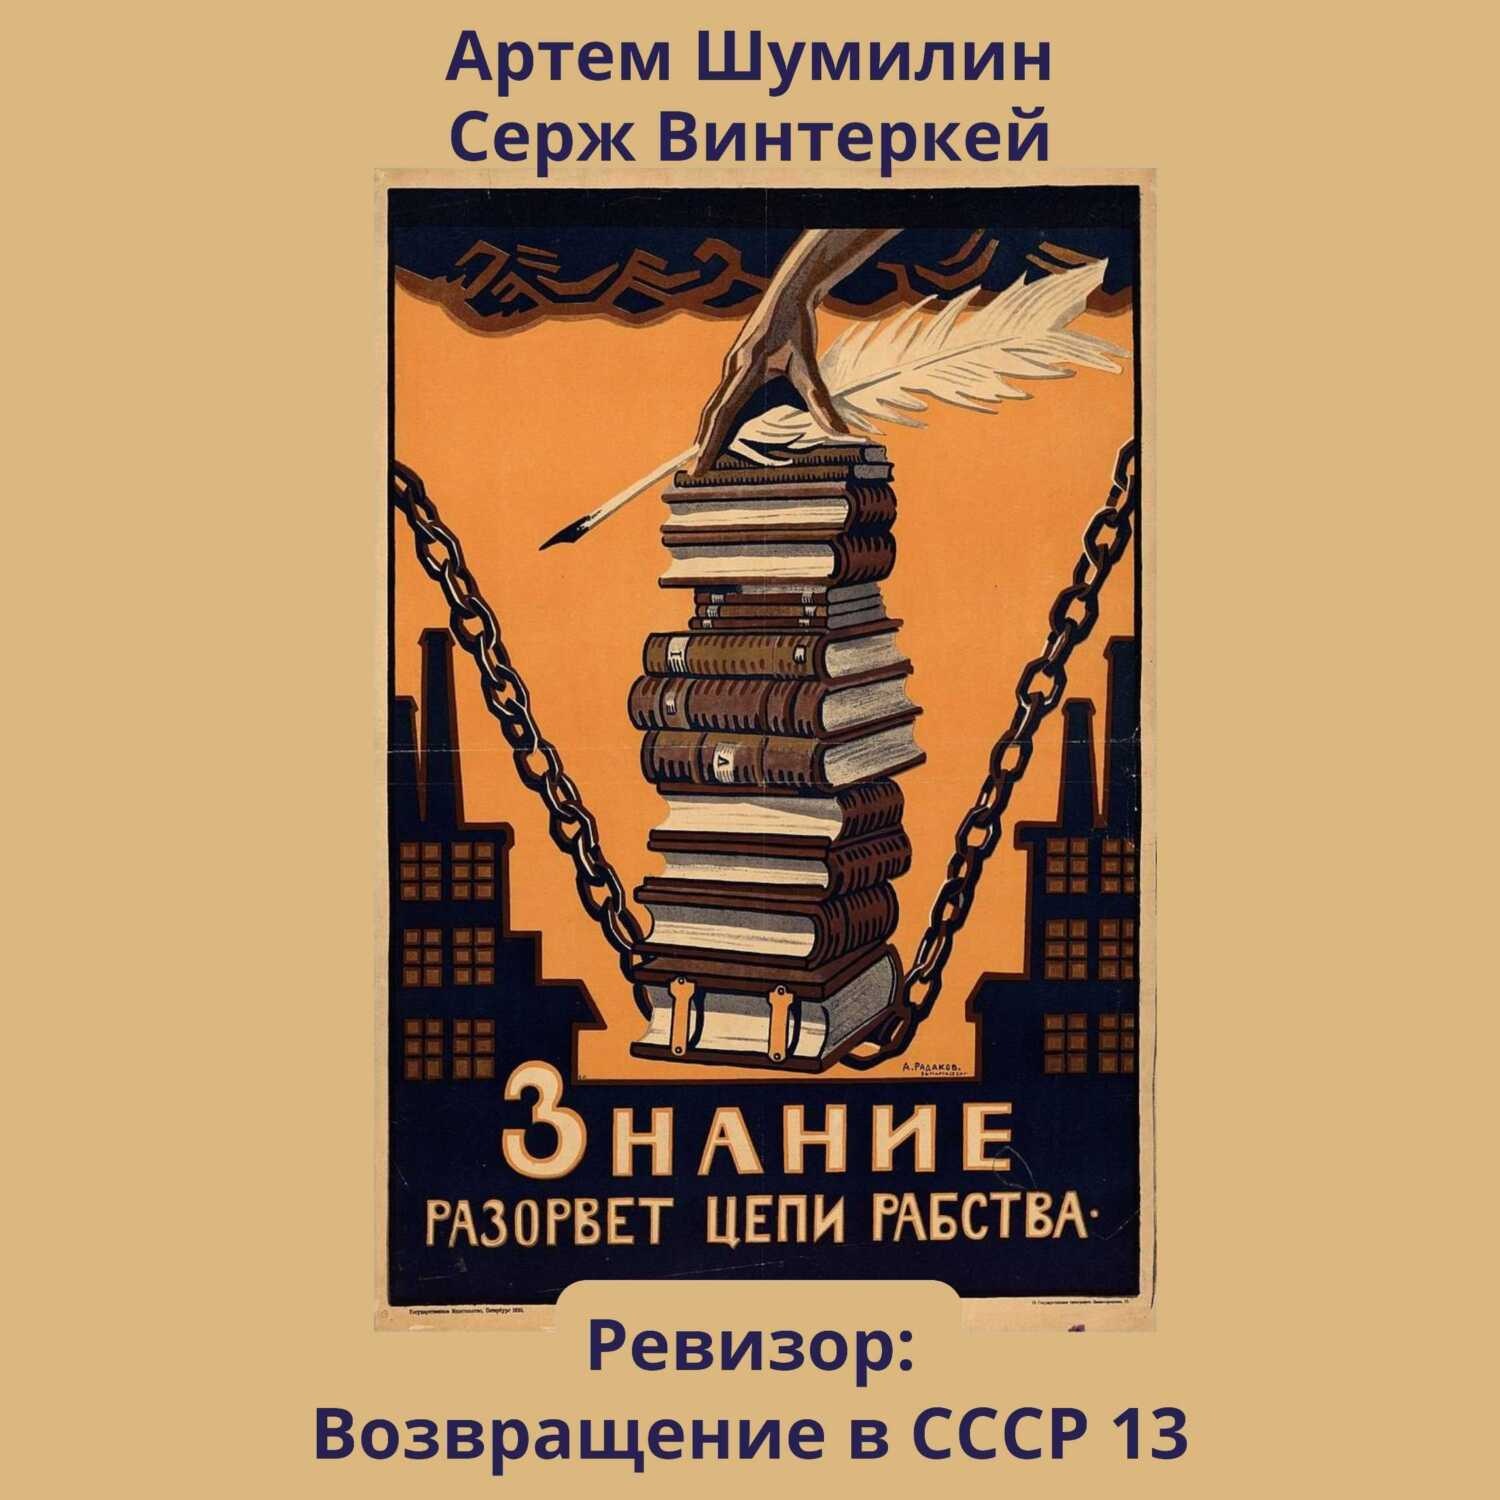 Винтеркей ревизор fb2. Знание разорвет цепи рабства плакат. Советские плакаты о знаниях. Плакат знания разорвут цепи. Советские плакаты про чтение.